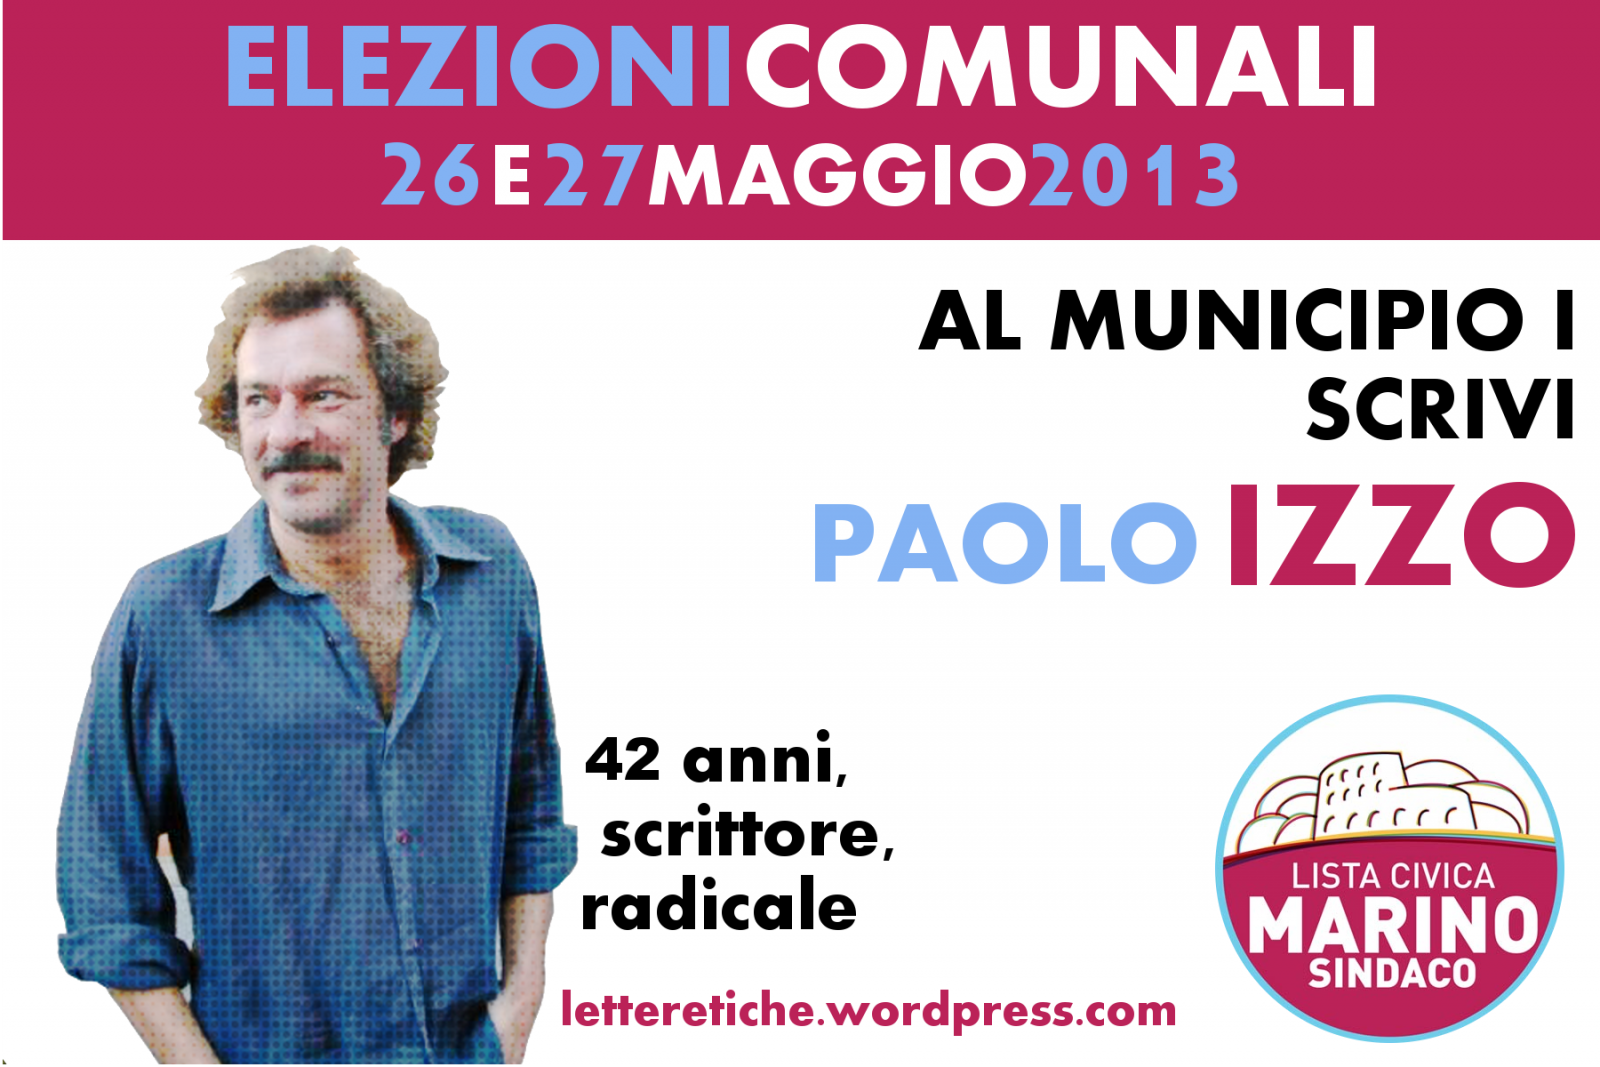 Paolo Izzo candidato radicale per il I Municipio di Roma – Lista Civica Marino Sindaco